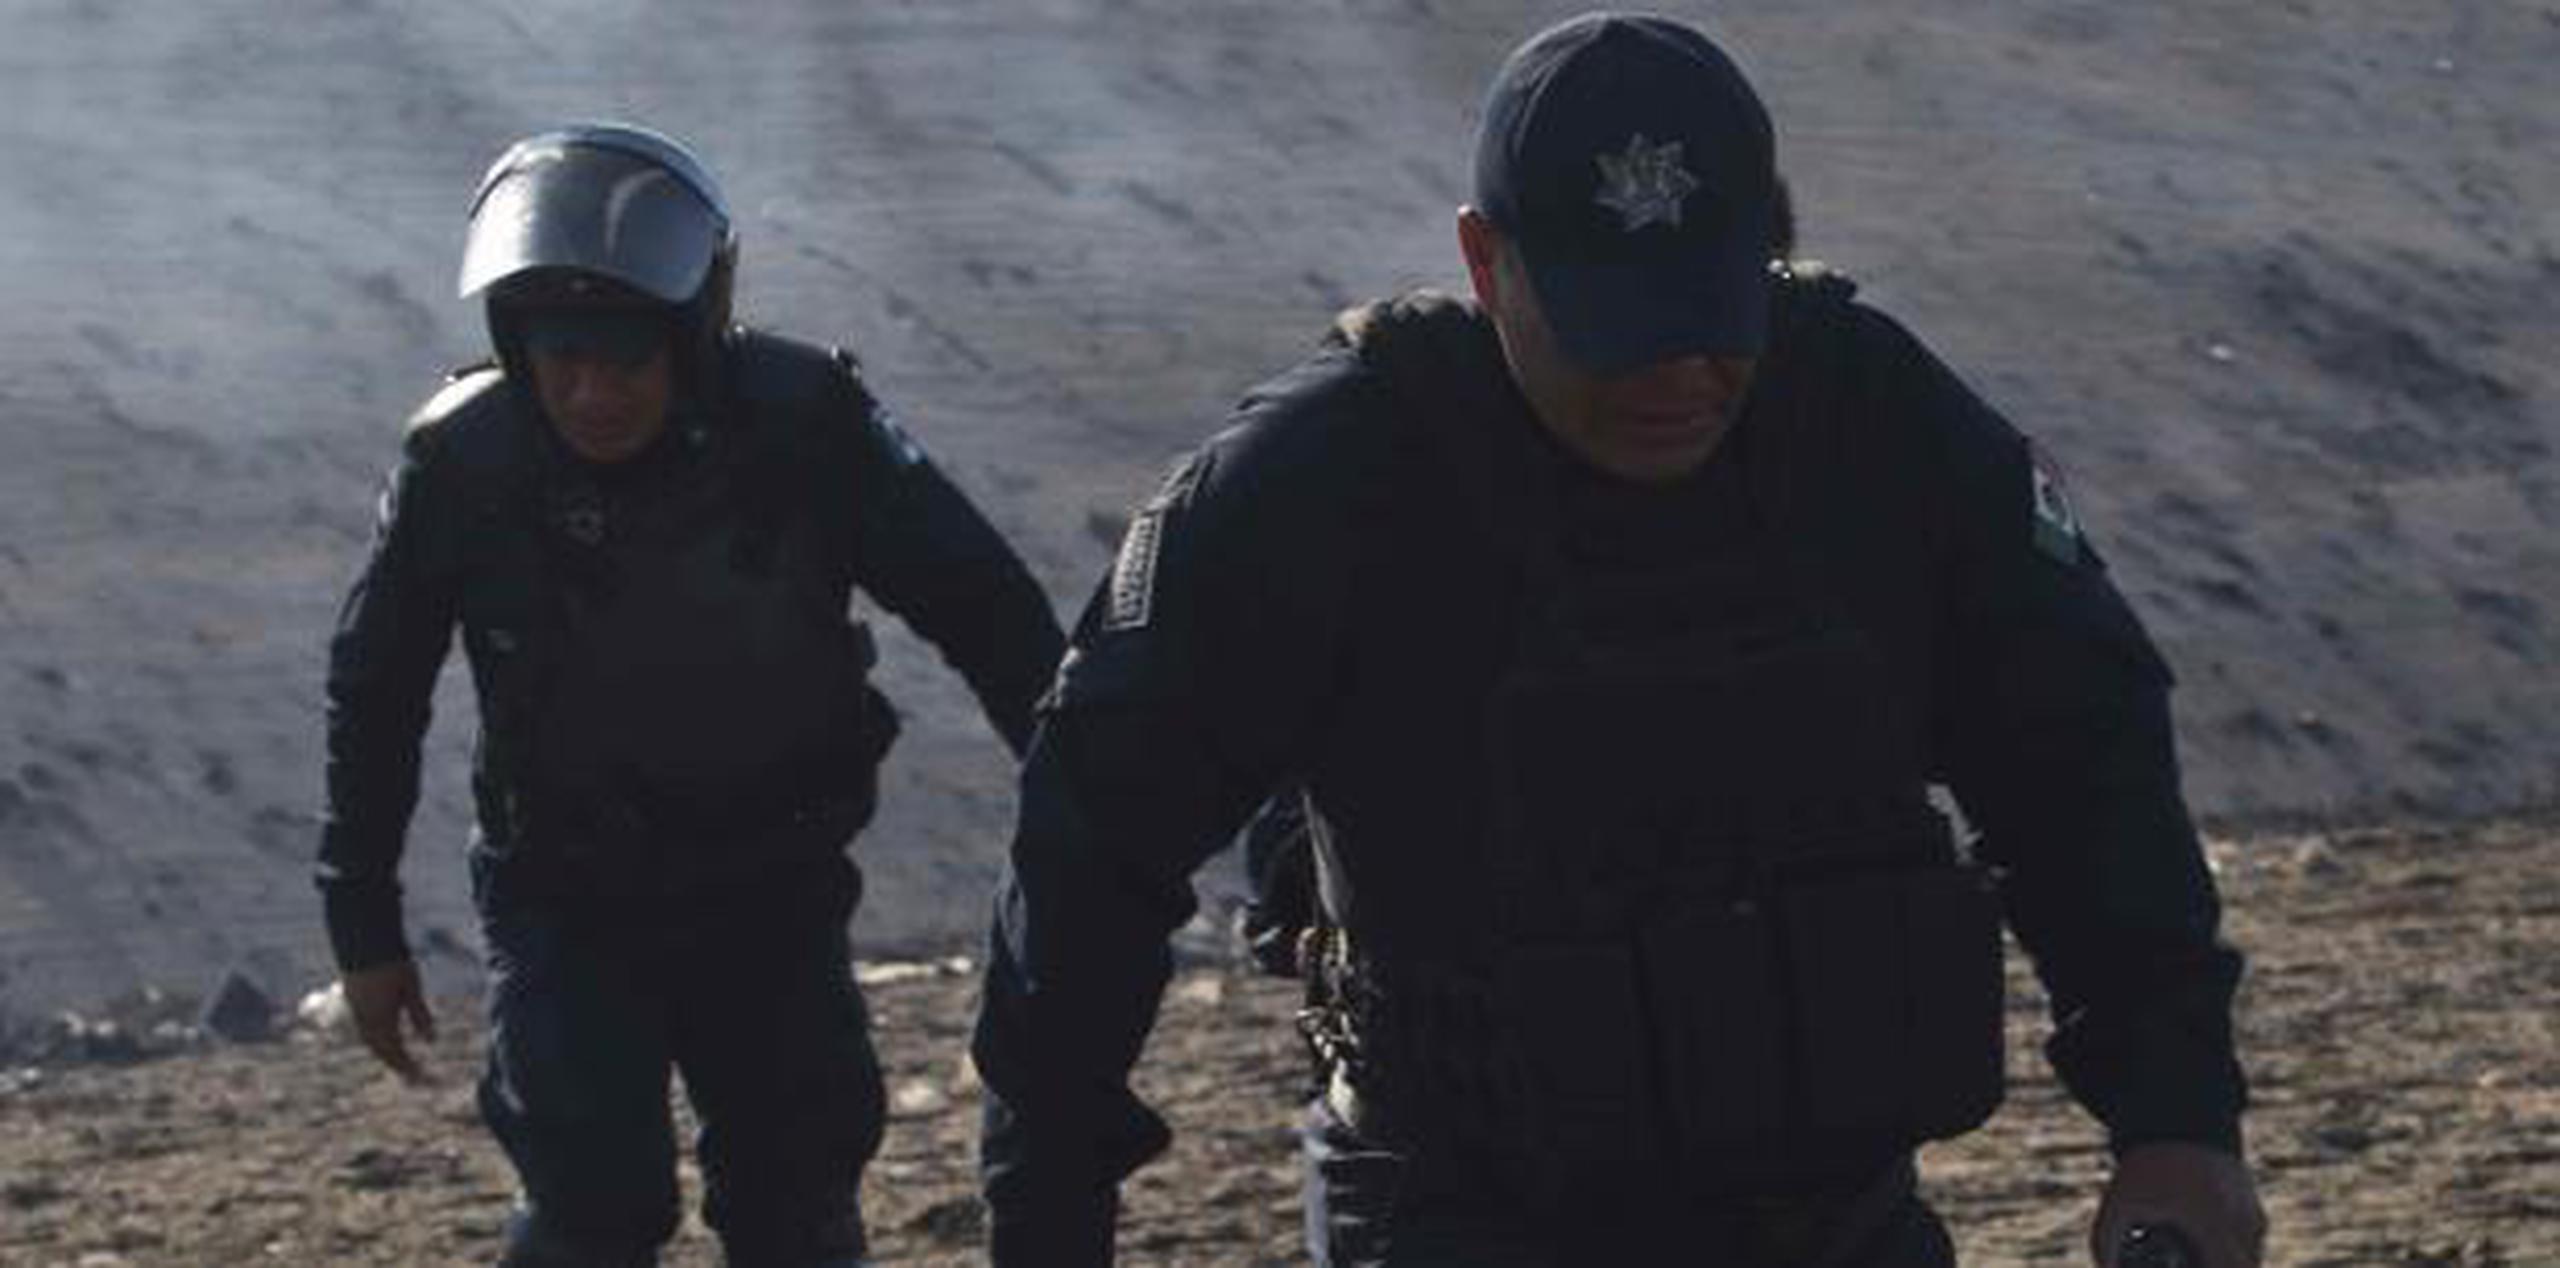 La fiscal general del estado, Marisela Gómez Cobos, dijo que los atacantes viajaban en tres vehículos y que atacaron a la patrulla de la policía cerca de una autopista en la localidad de La Huerta.  (AP)

